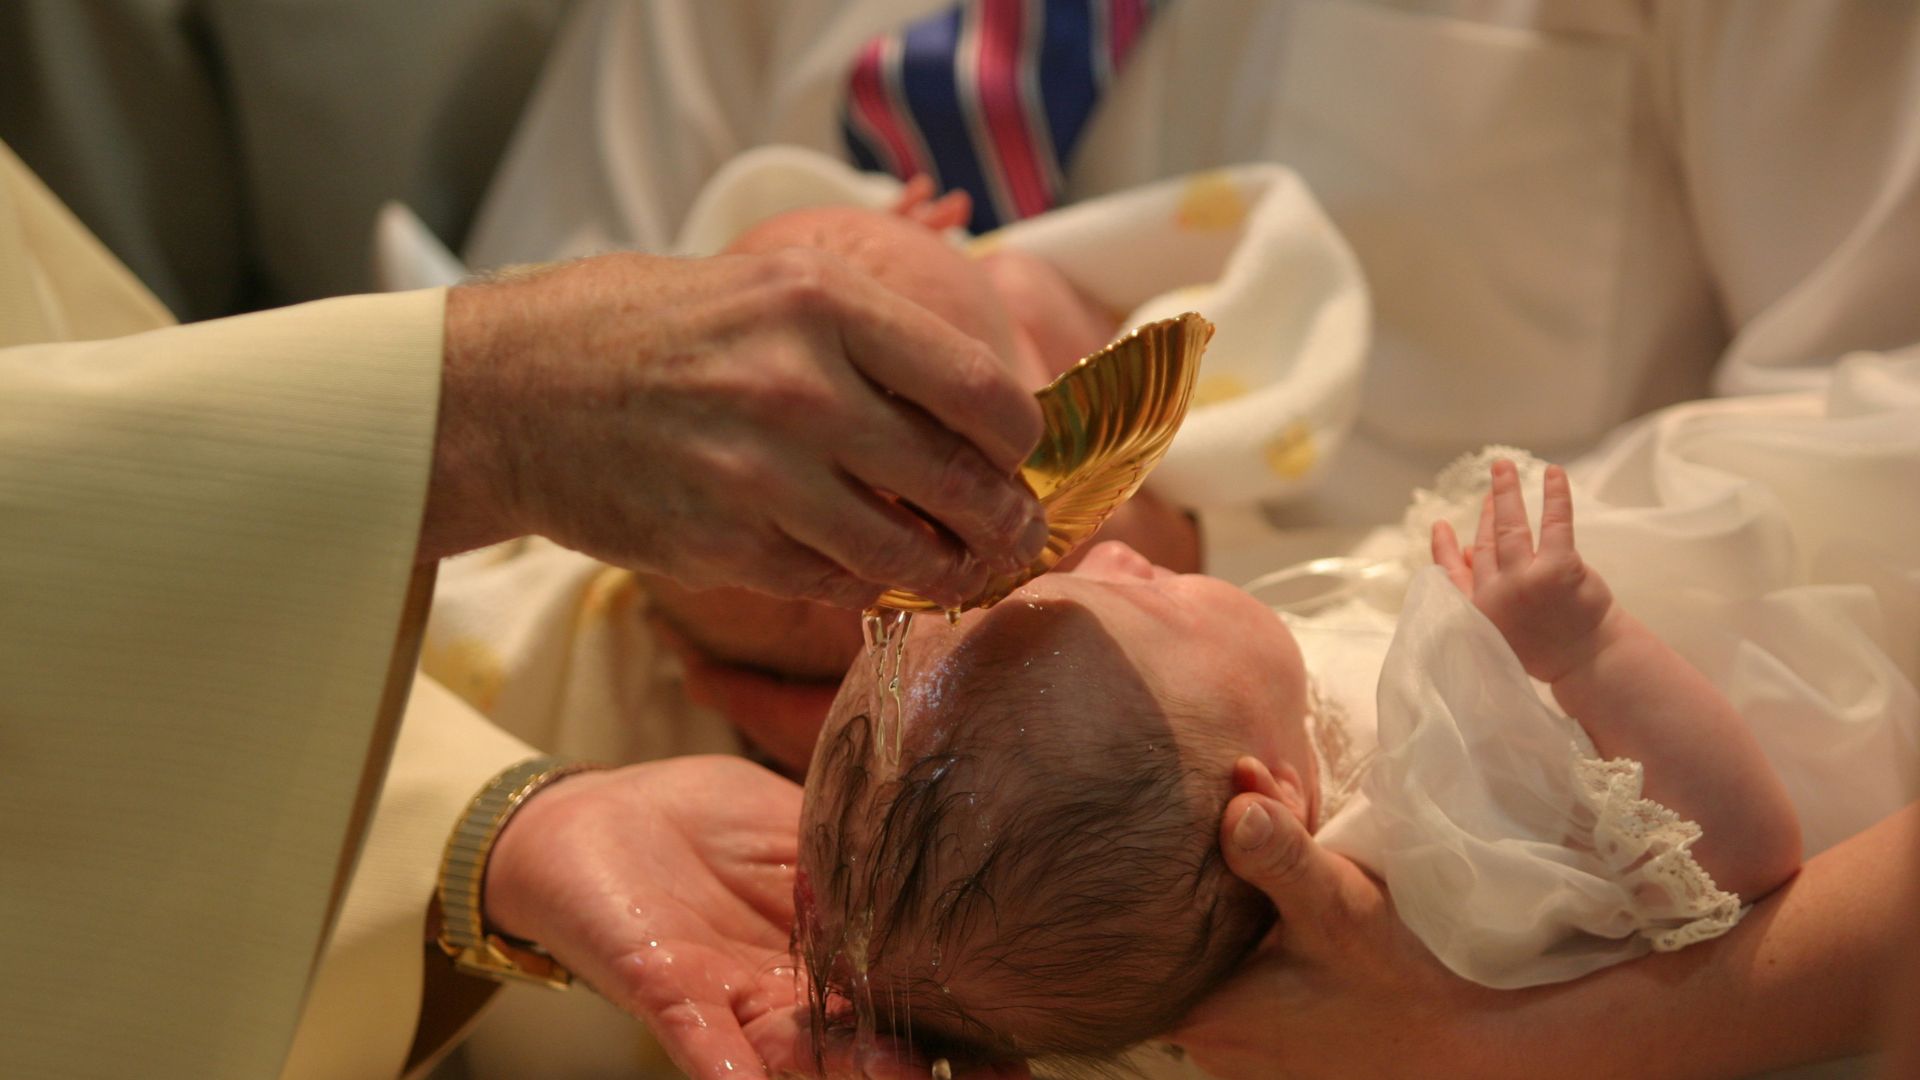 Głowa dziecka polewana wodą przez kapłana – chrzest protestancki praktykuje całkowite zanurzenie głowy.